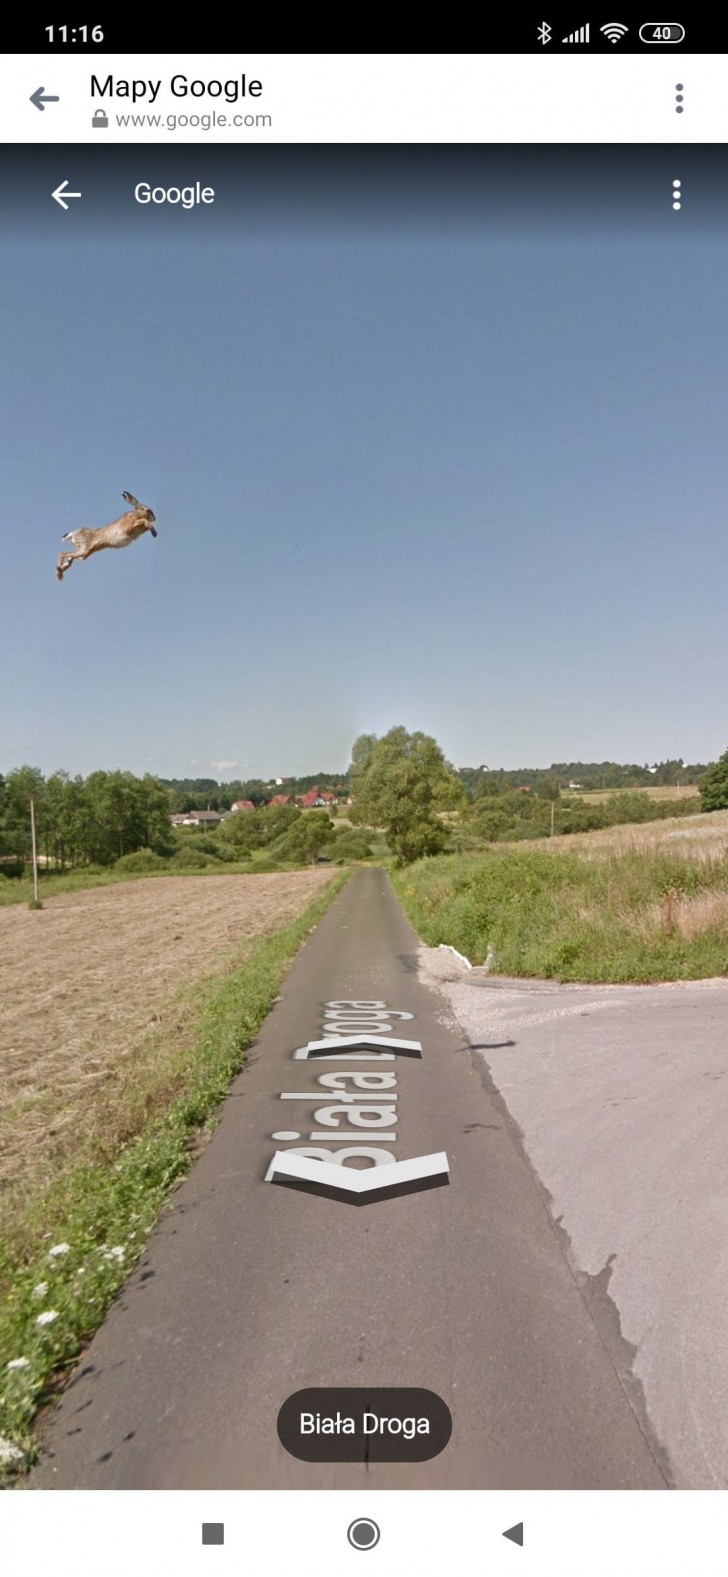 Quante erano le chance che una lepre venisse catturata da uno screen di Google Street View?